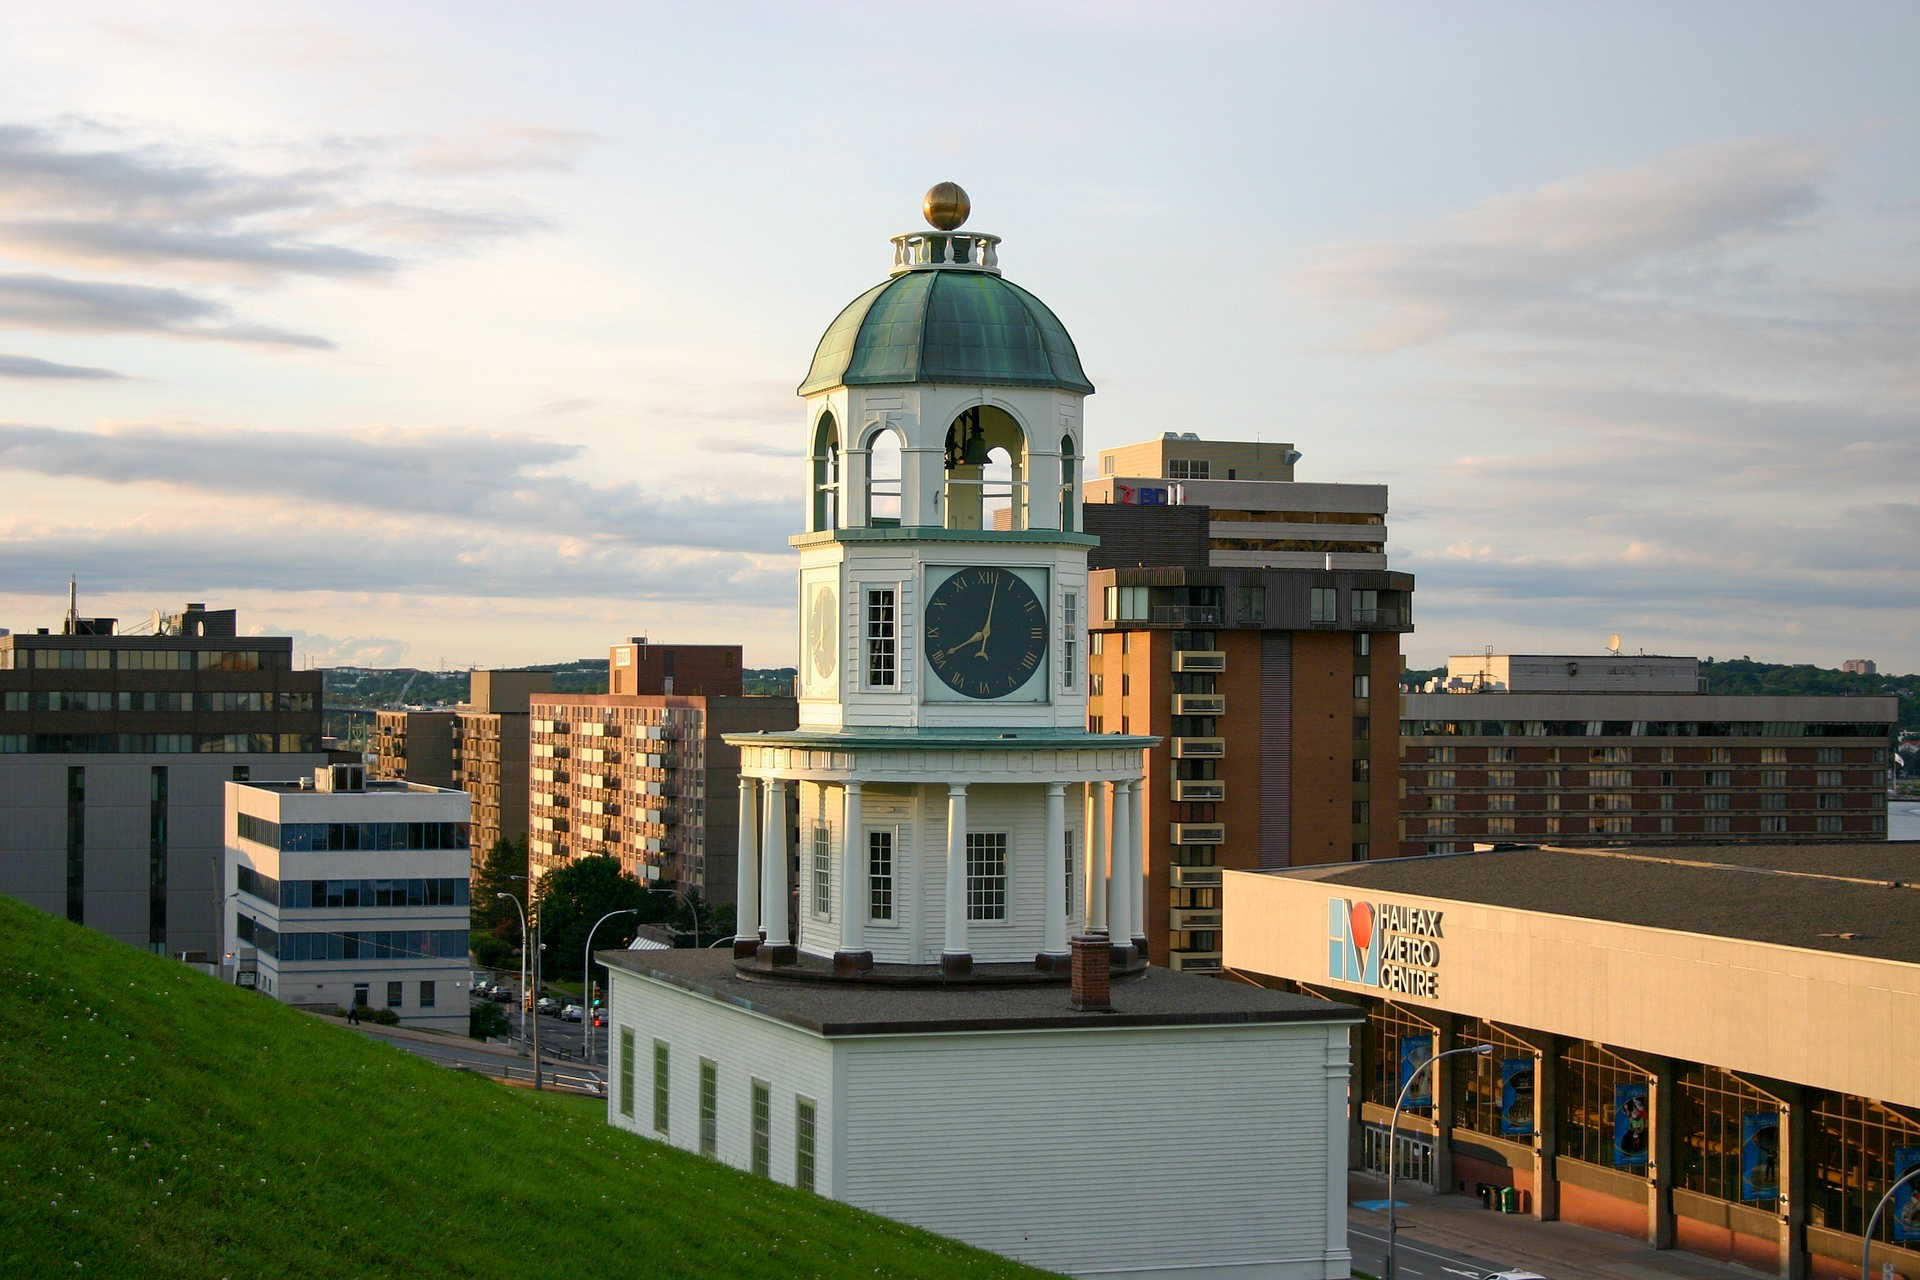 Der Uhrenturm befindet sich auf dem Zitadellenhügel von Halifax